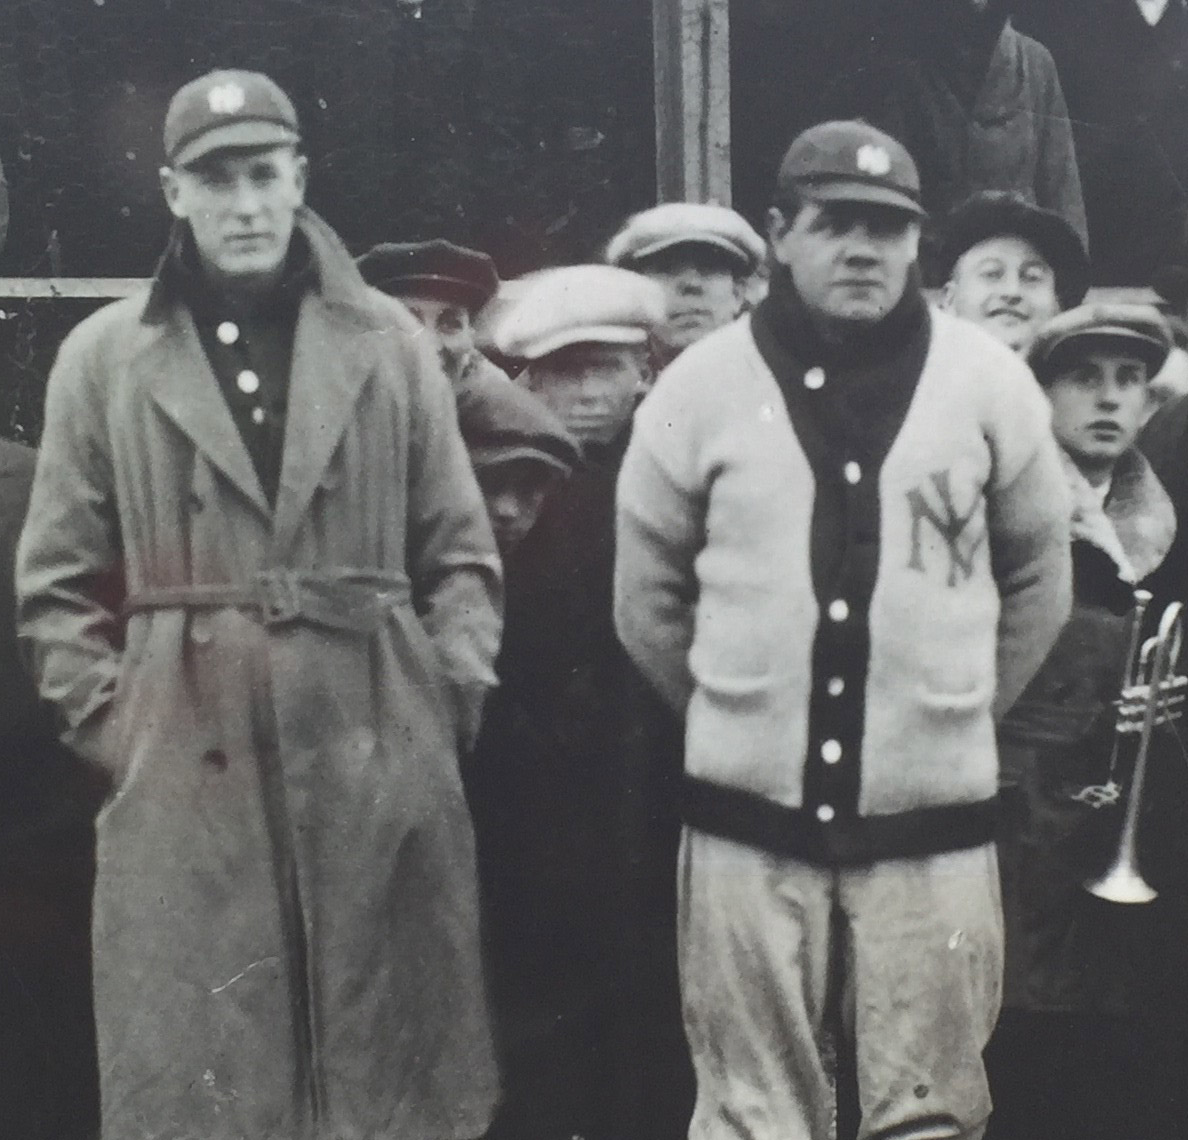 Len Youngman behind Bob Meusel and Babe Ruth - poster at Sleepy Eye ballpark